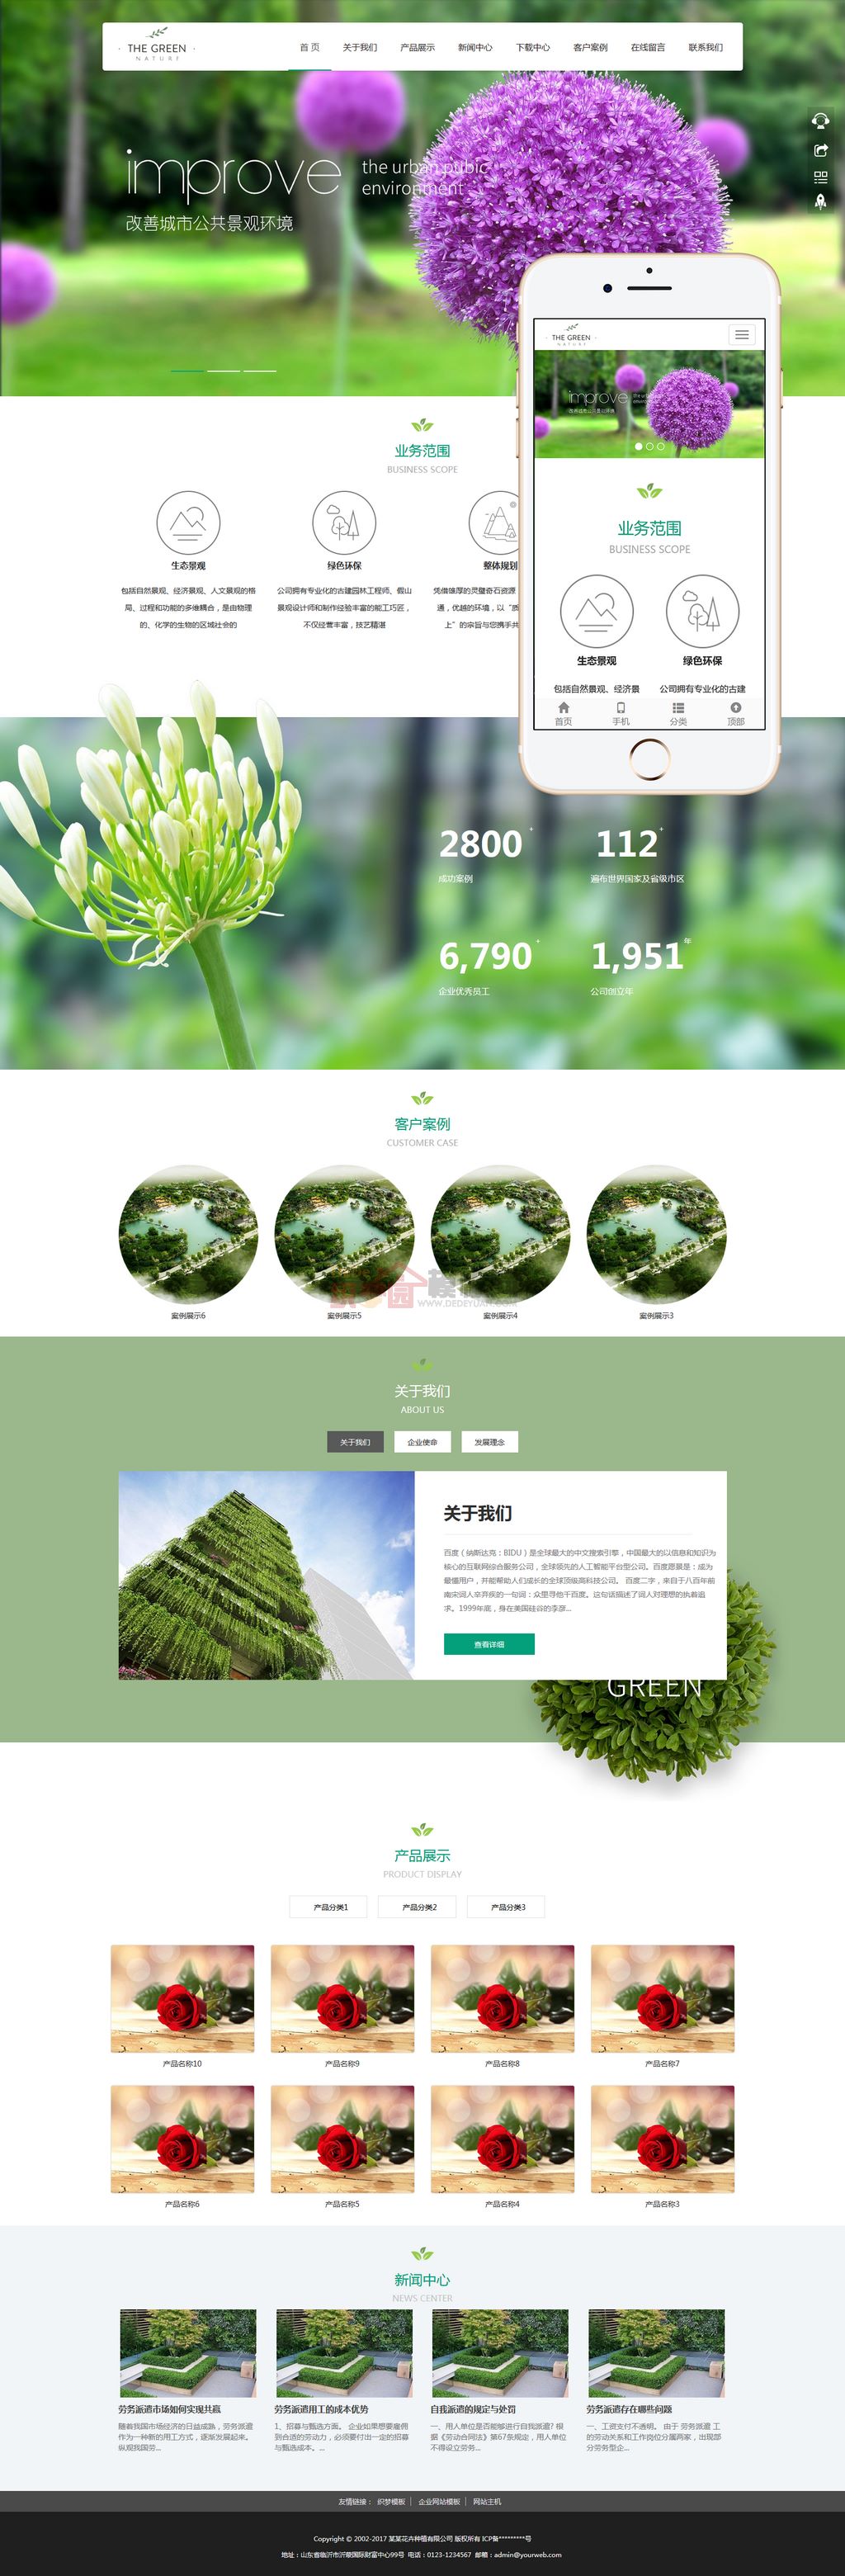 响应式绿色大气园林花卉种植园林景观设计网站Wordpress模板截图